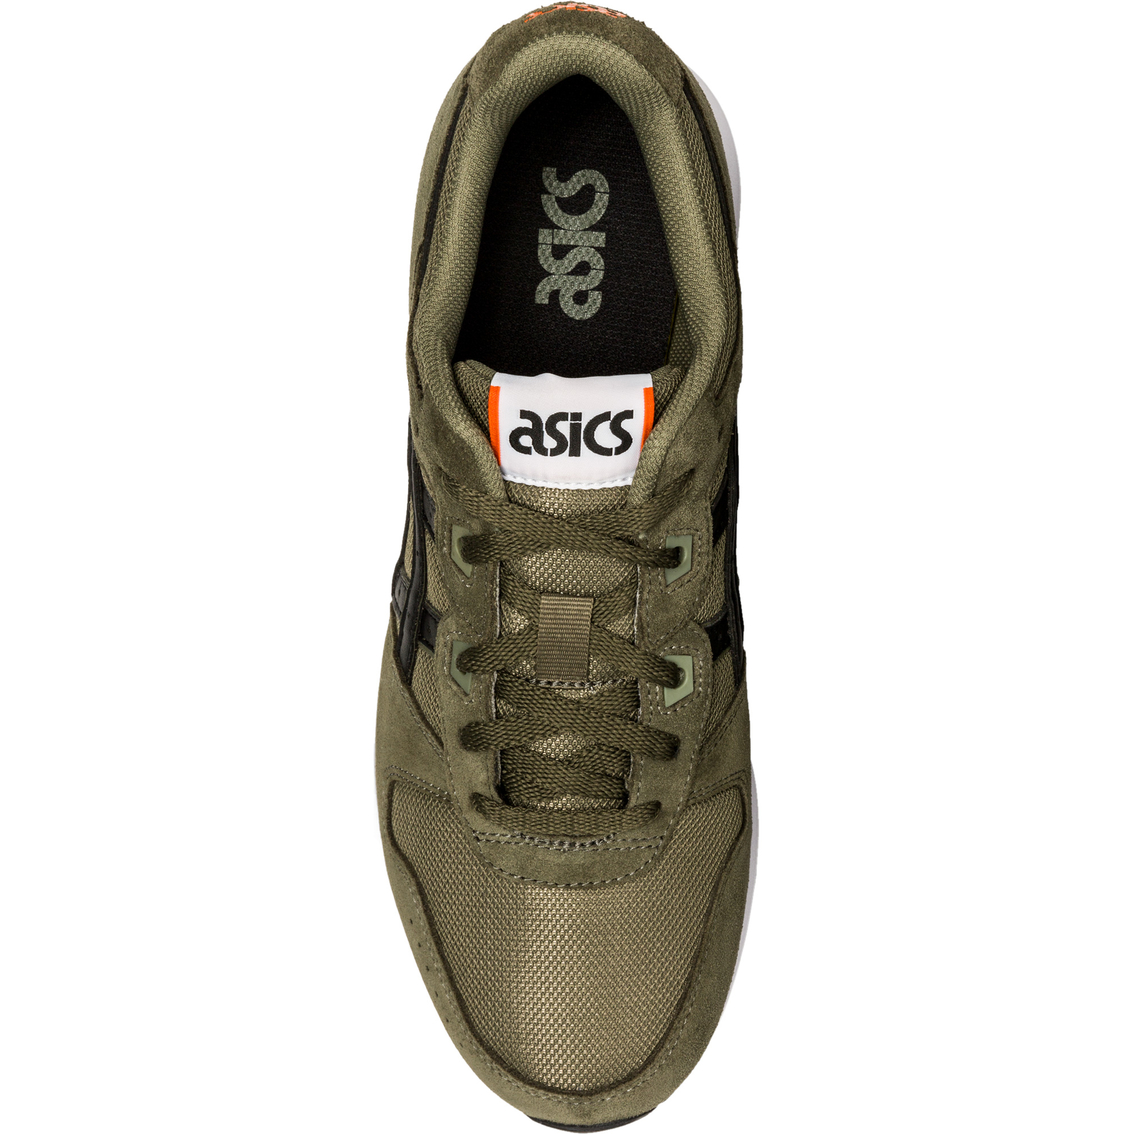 ASICS Men's GEL Lyte Classic Sneaker - Image 6 of 6